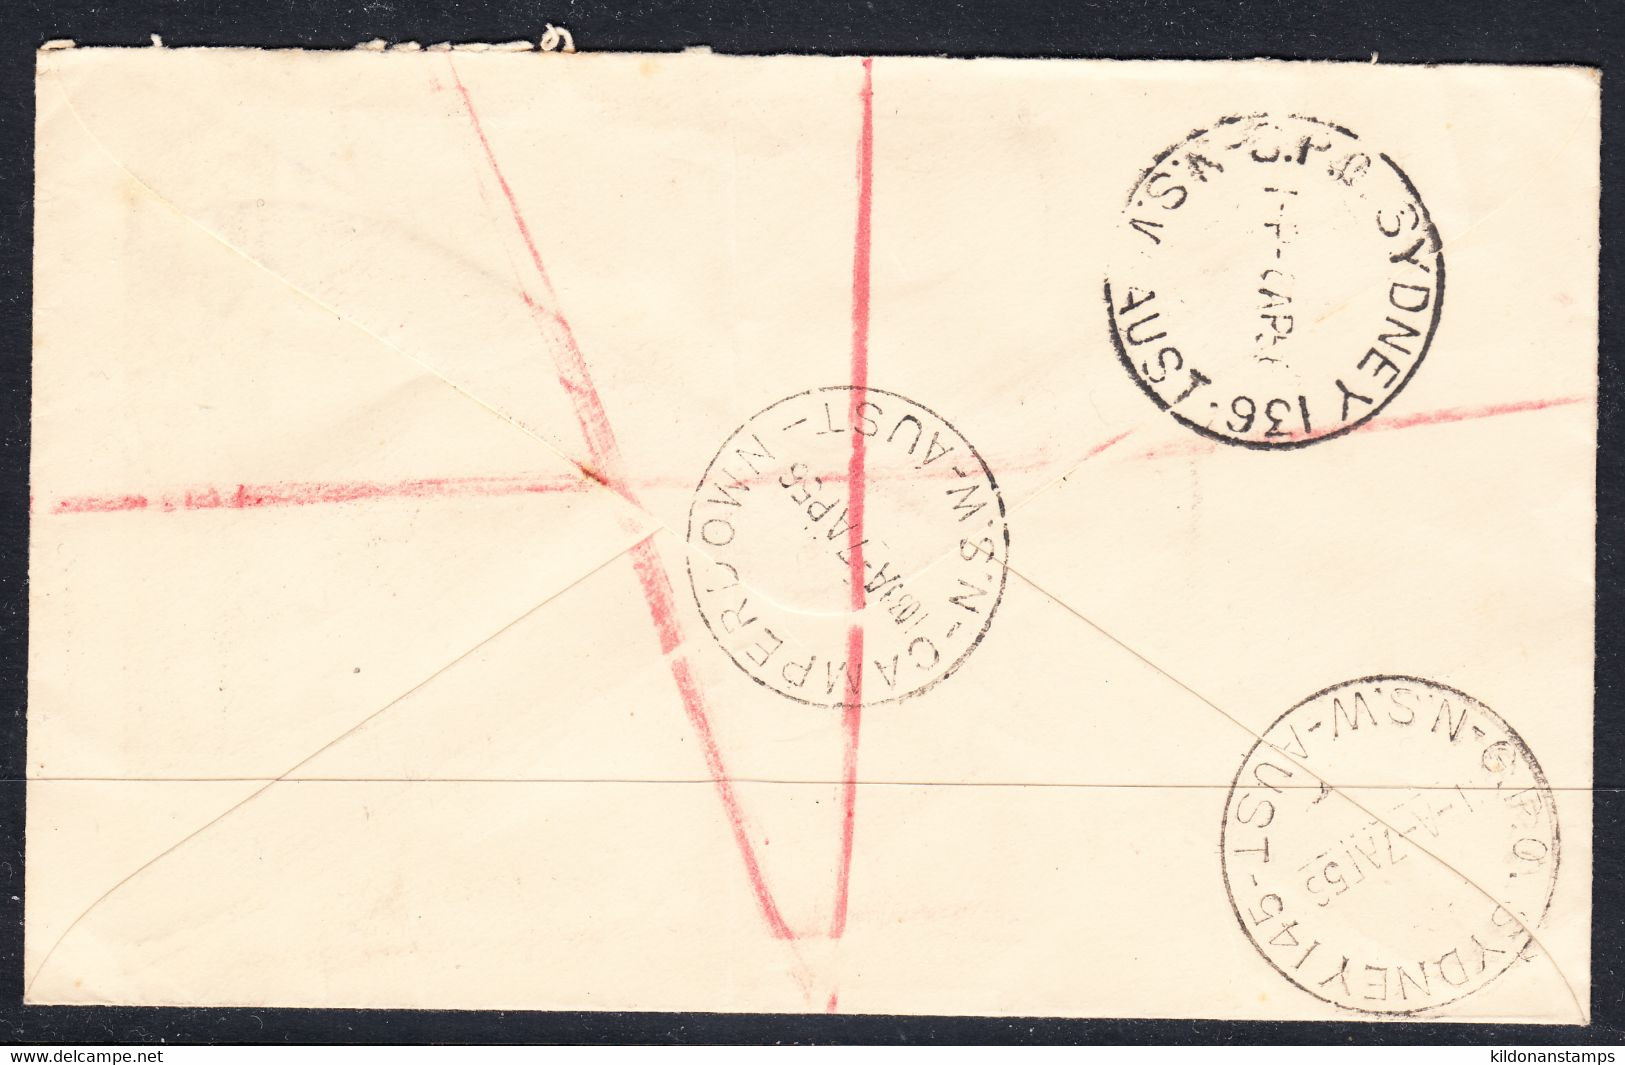 Australia Registered, Postmark Apr 7, 1956 - Covers & Documents